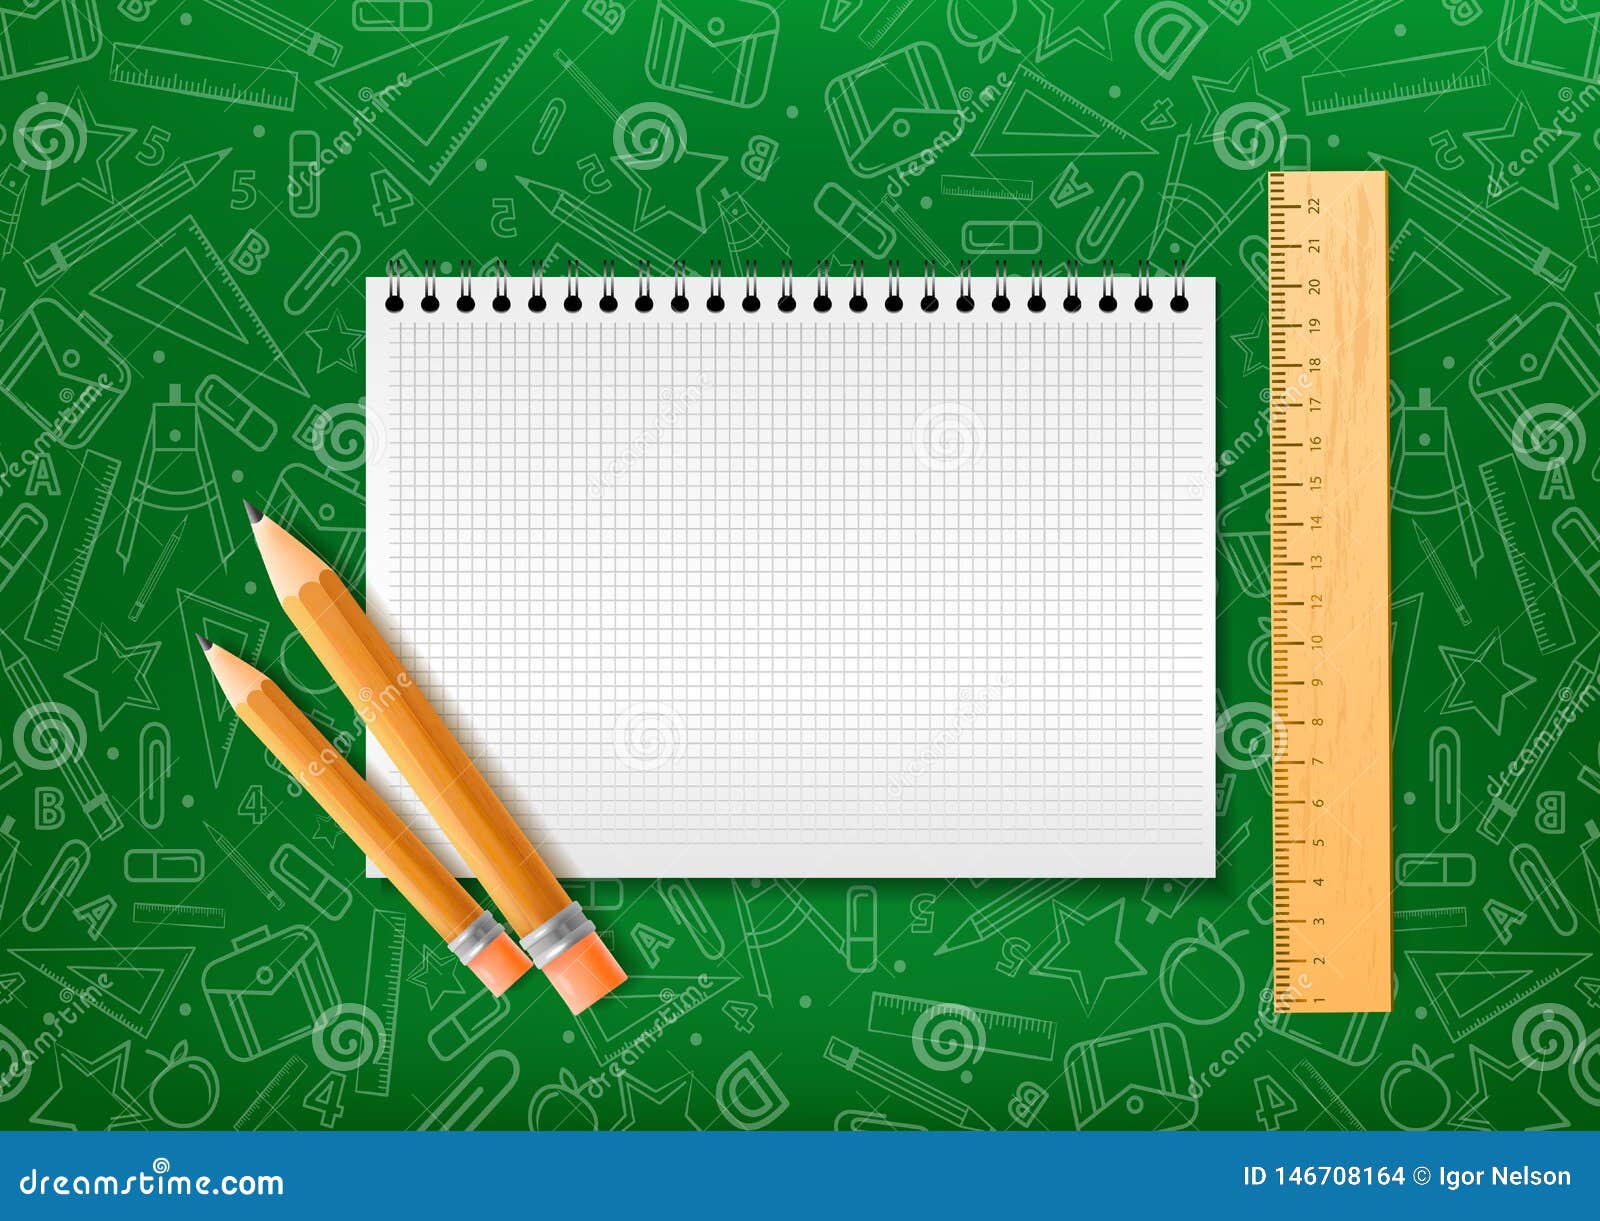 Nếu bạn đang tìm kiếm sổ tay phù hợp cho việc học hoặc làm việc, thì sổ tay với bút chì và bút viết trình bày theo phong cách hiện thực trên nền xanh là lựa chọn hoàn hảo. Hình ảnh chi tiết và chất lượng sẽ giúp bạn hiểu rõ hơn về sổ tay này. Màu xanh của nền cũng khiến bạn cảm thấy thư giãn và tập trung hơn khi làm việc. 